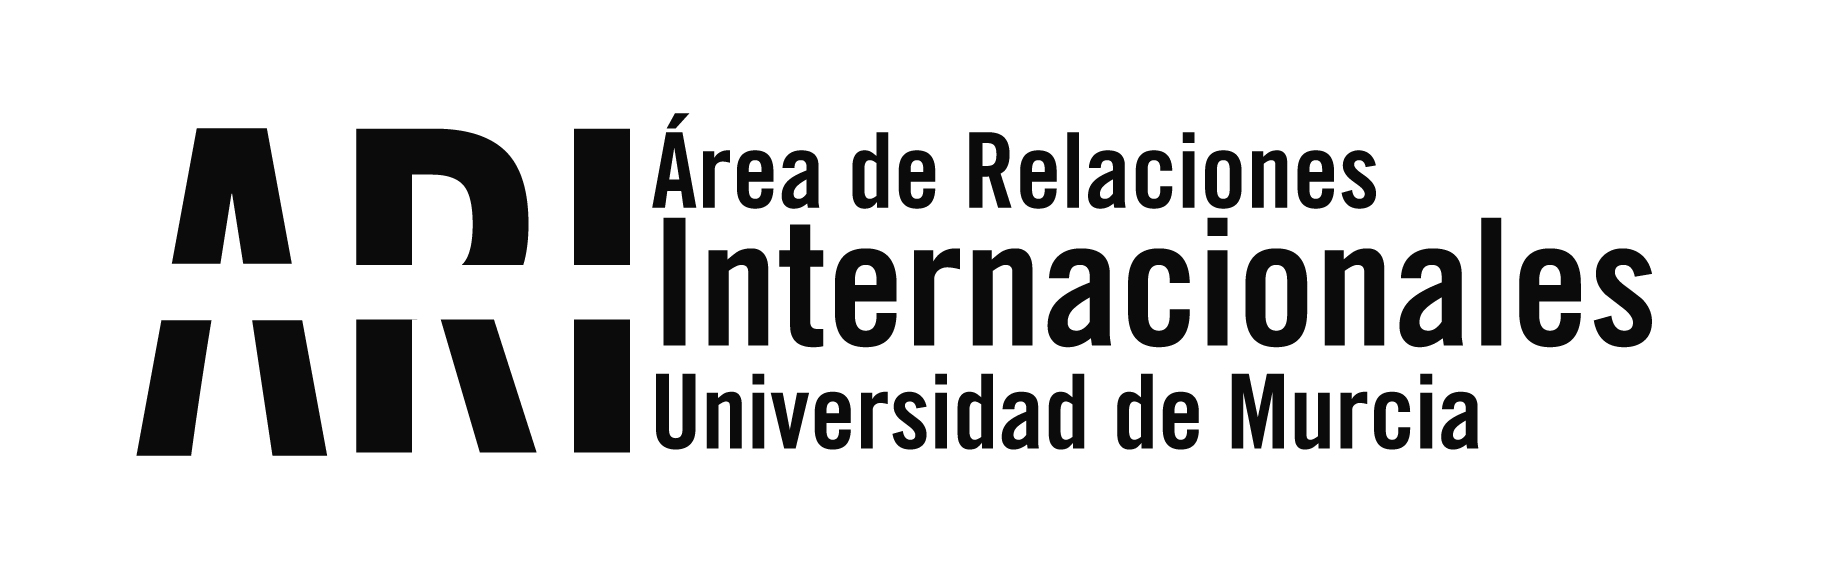 La Universidad de Murcia participa en la feria internacional EAIE-2020 virtual - Área de Relaciones Internacionales